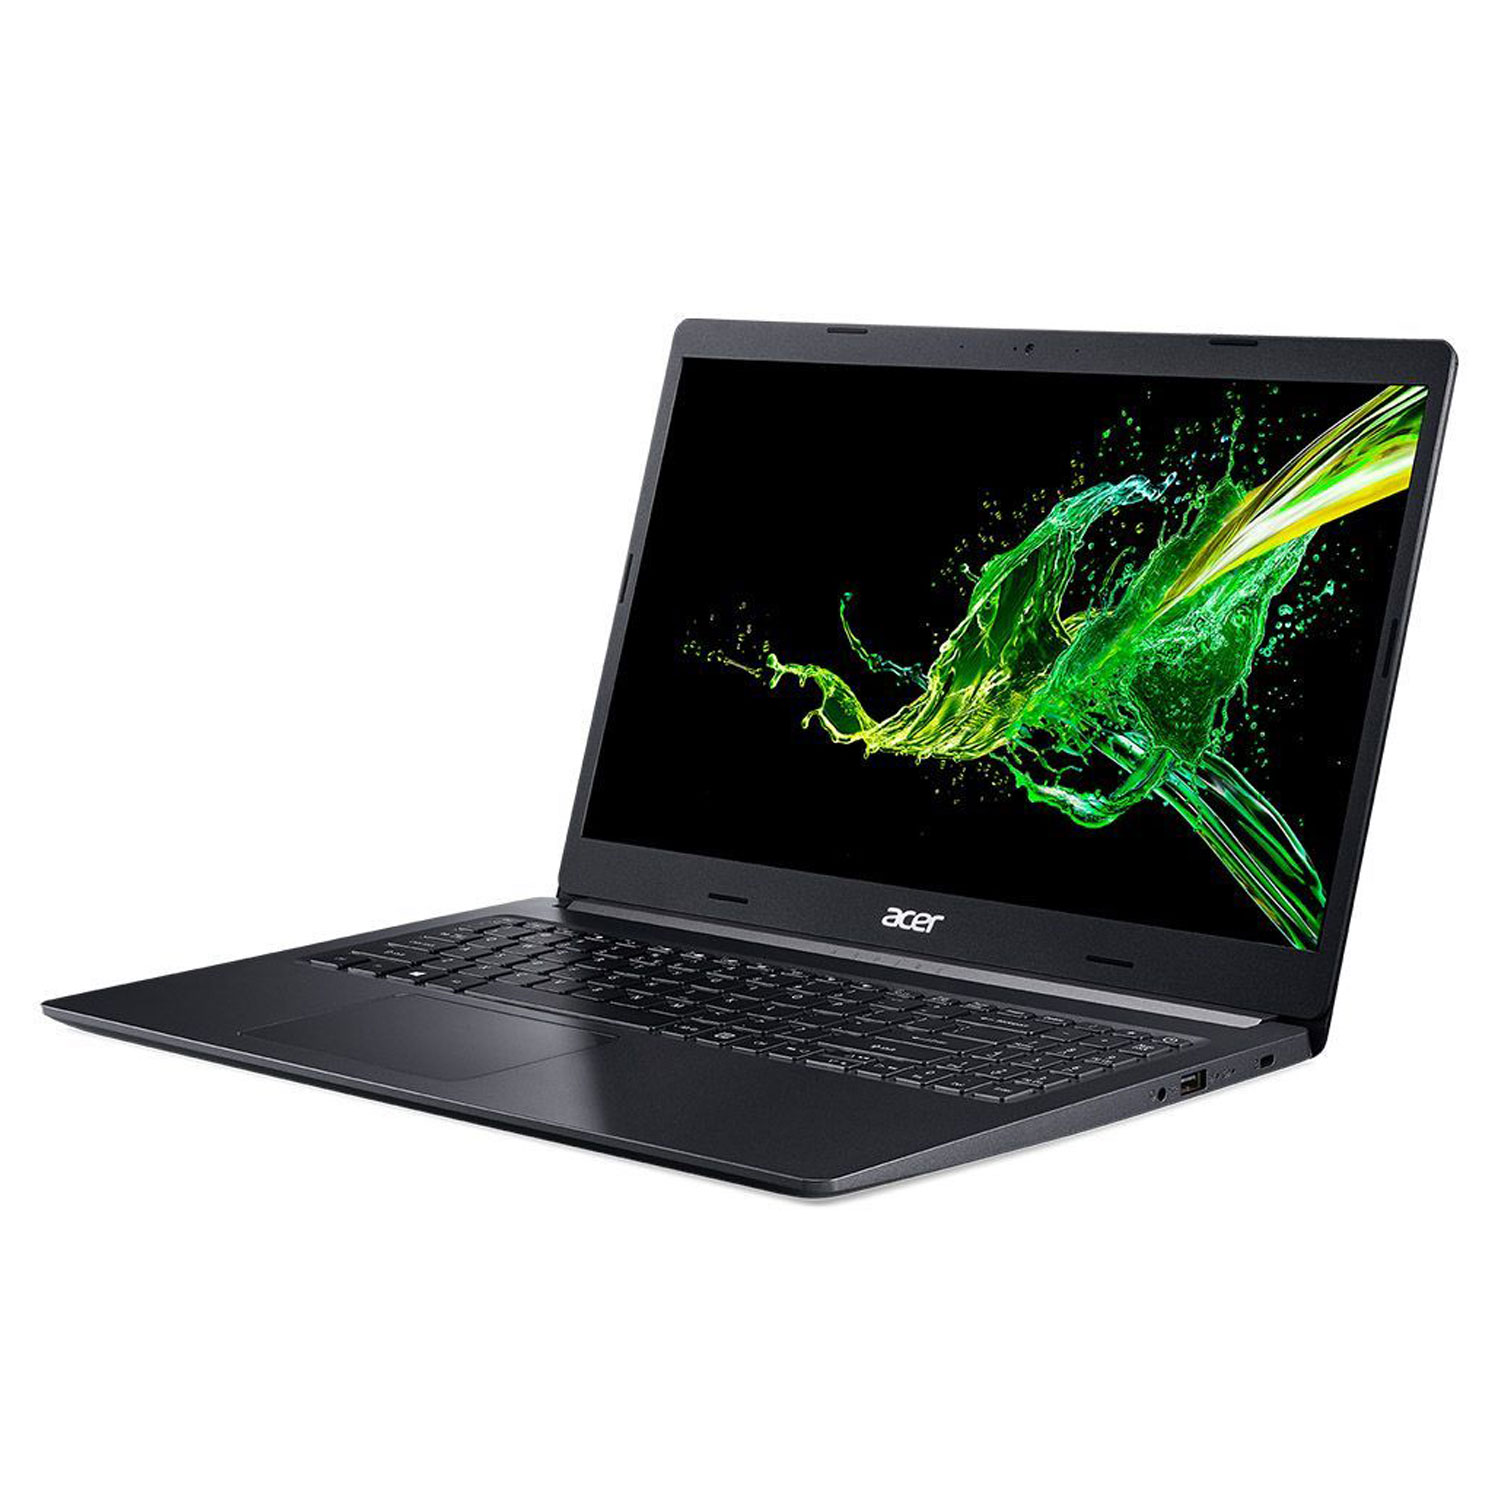 Notebook Acer Aspire 5 A515-54-564G / Intel Core I5-1021OU / 8GB RAM / 1TB / Tela 15.6" - Preto